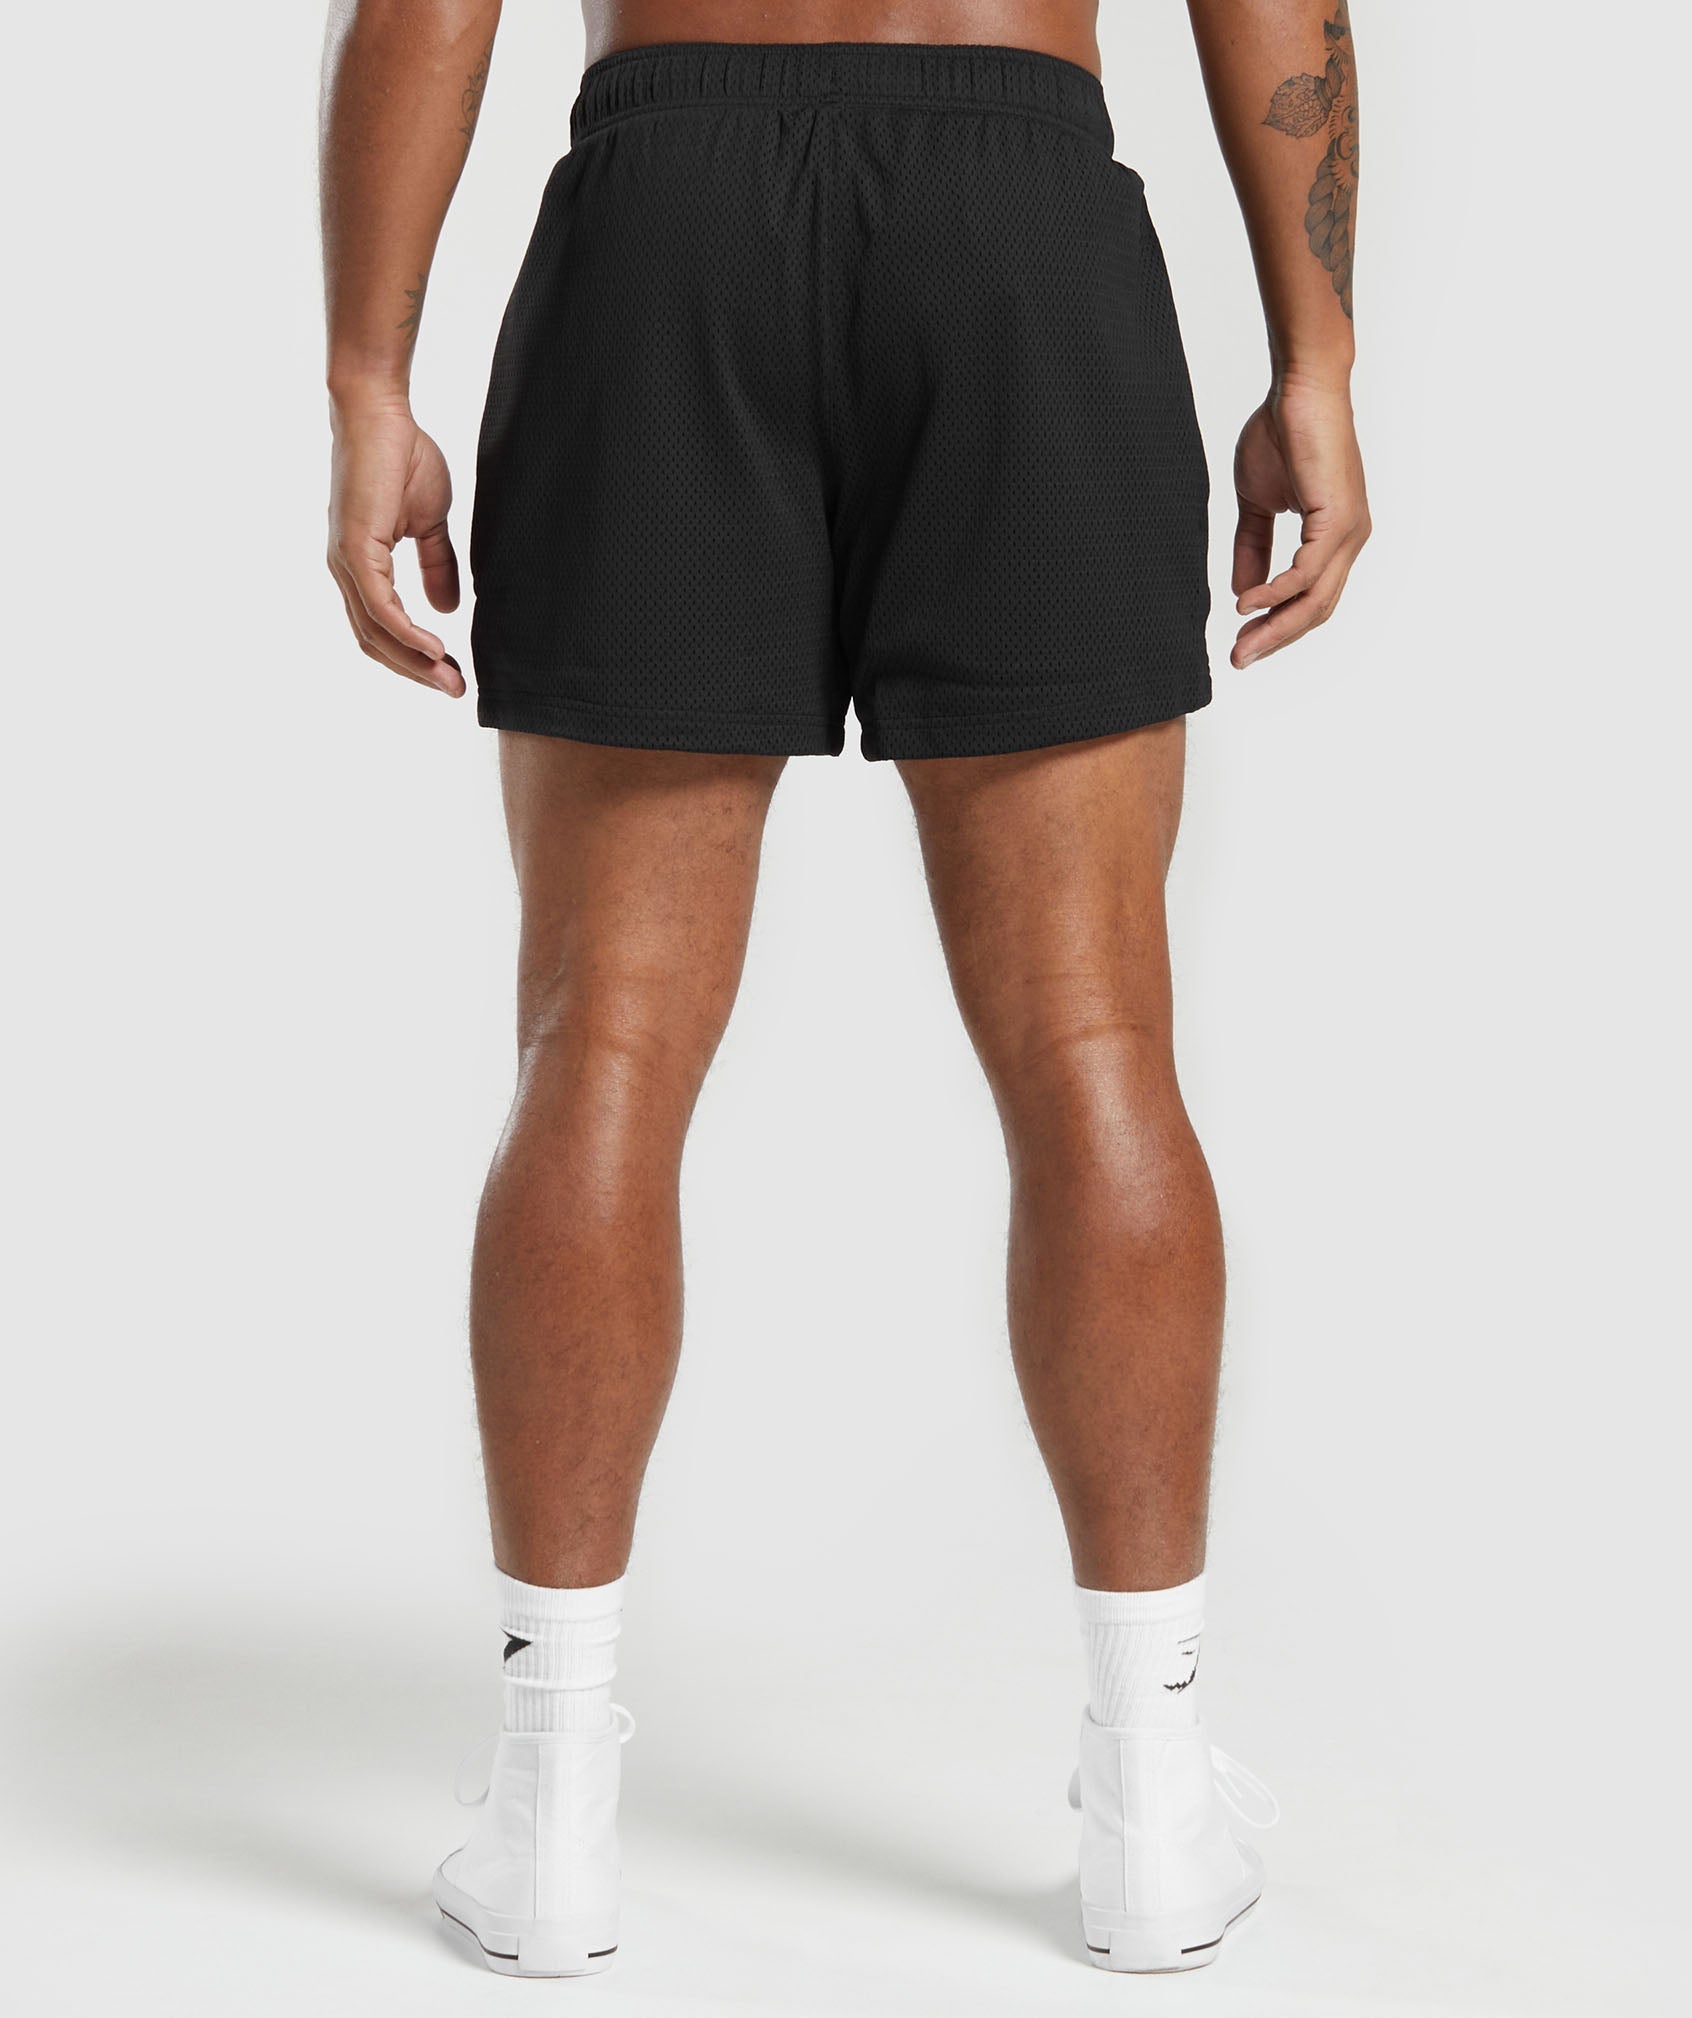 Lifting Club Mesh 5" Shorts in Black - view 3